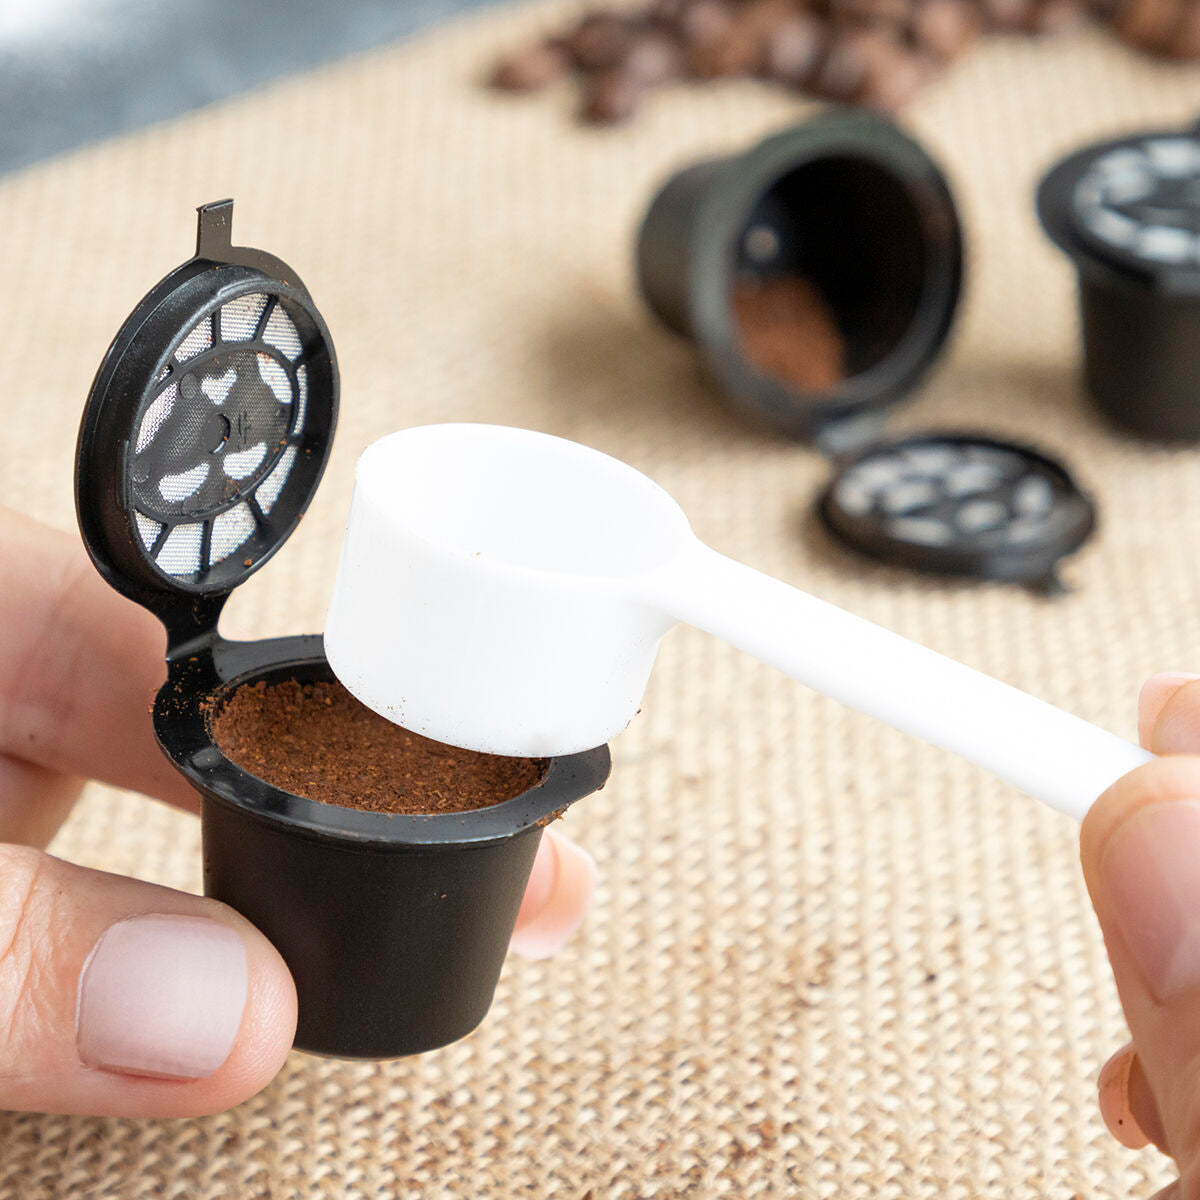 Комплект от 3 капсули за кафе за многократна употреба Recoff Innovagoods